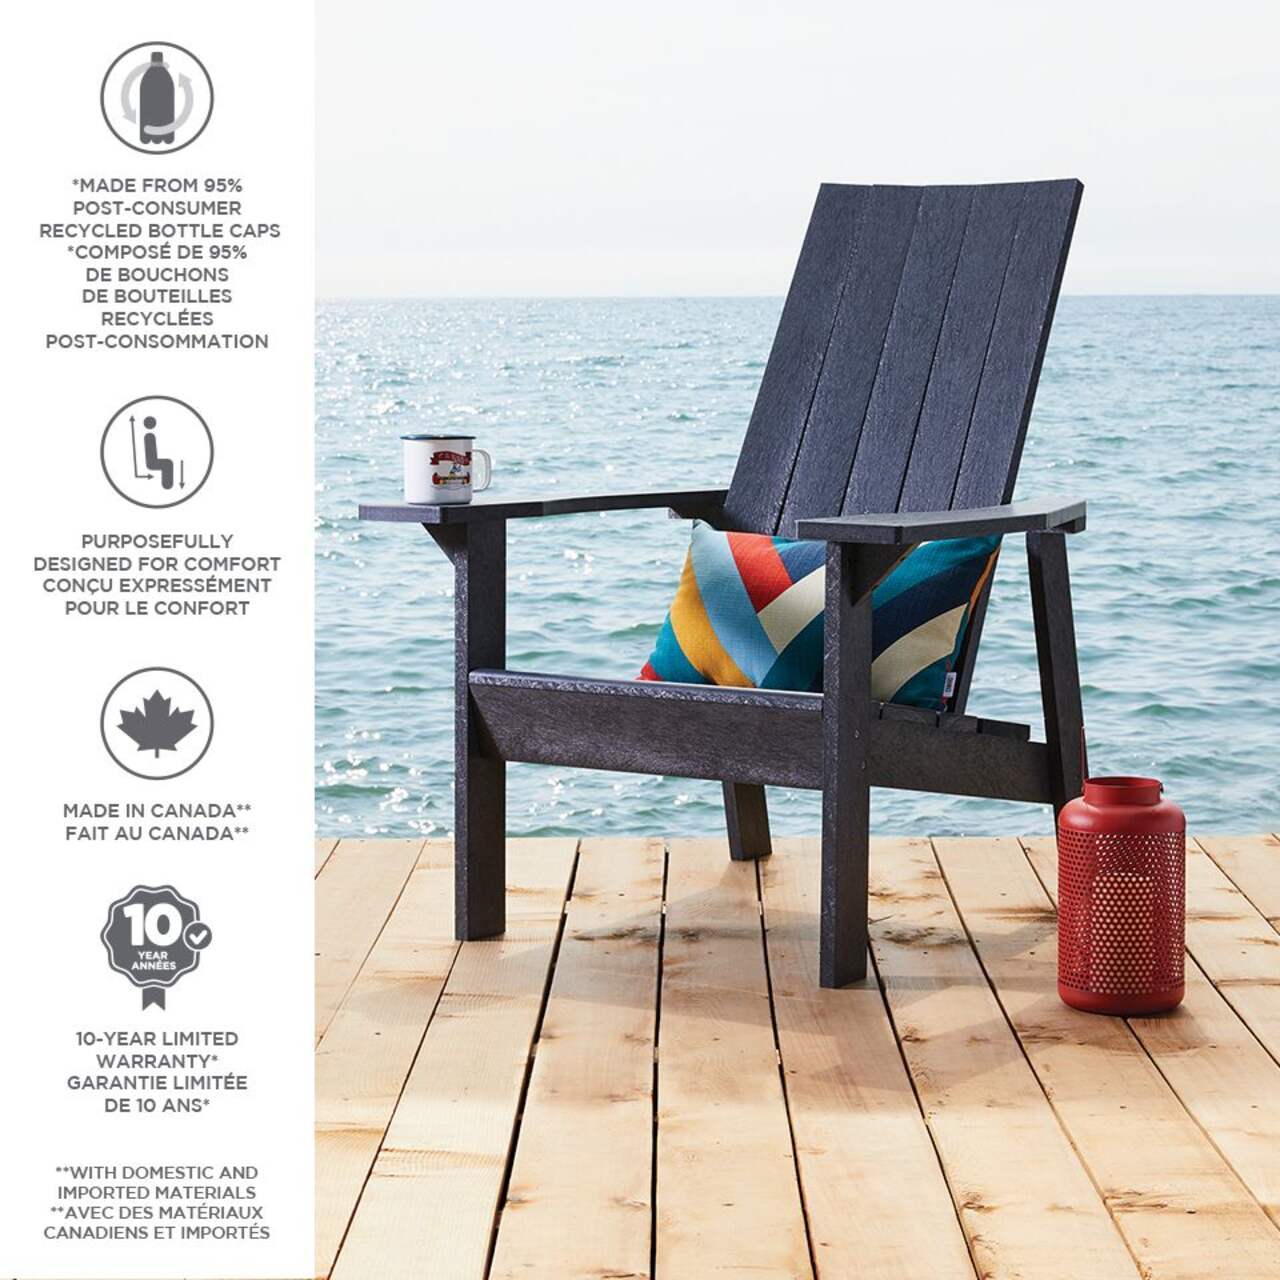 CANVAS Arrowhead Recycled Plastic Outdoor Patio Muskoka Chair, Navy